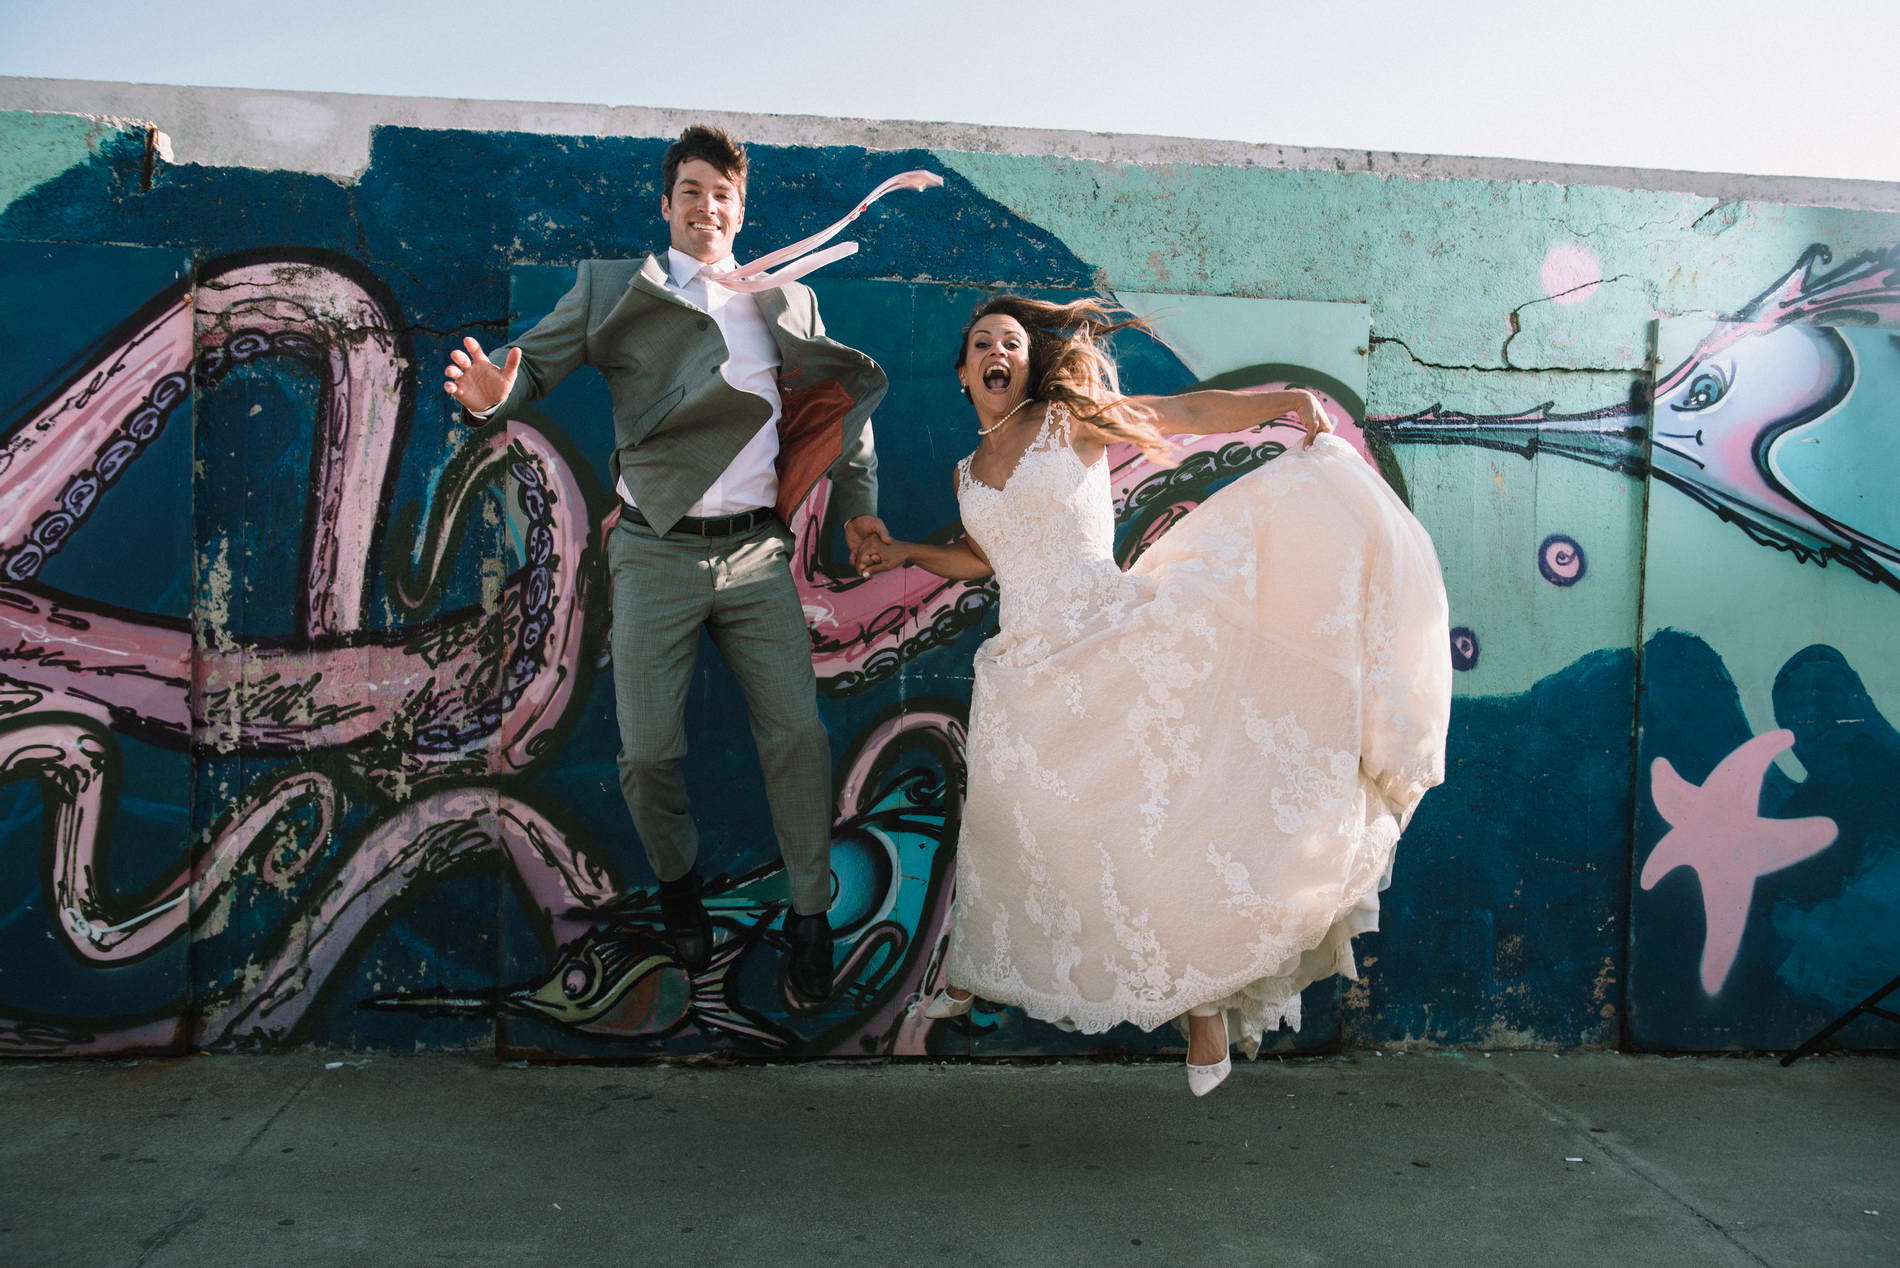 Next day φωτογράφηση γάμου με graffiti